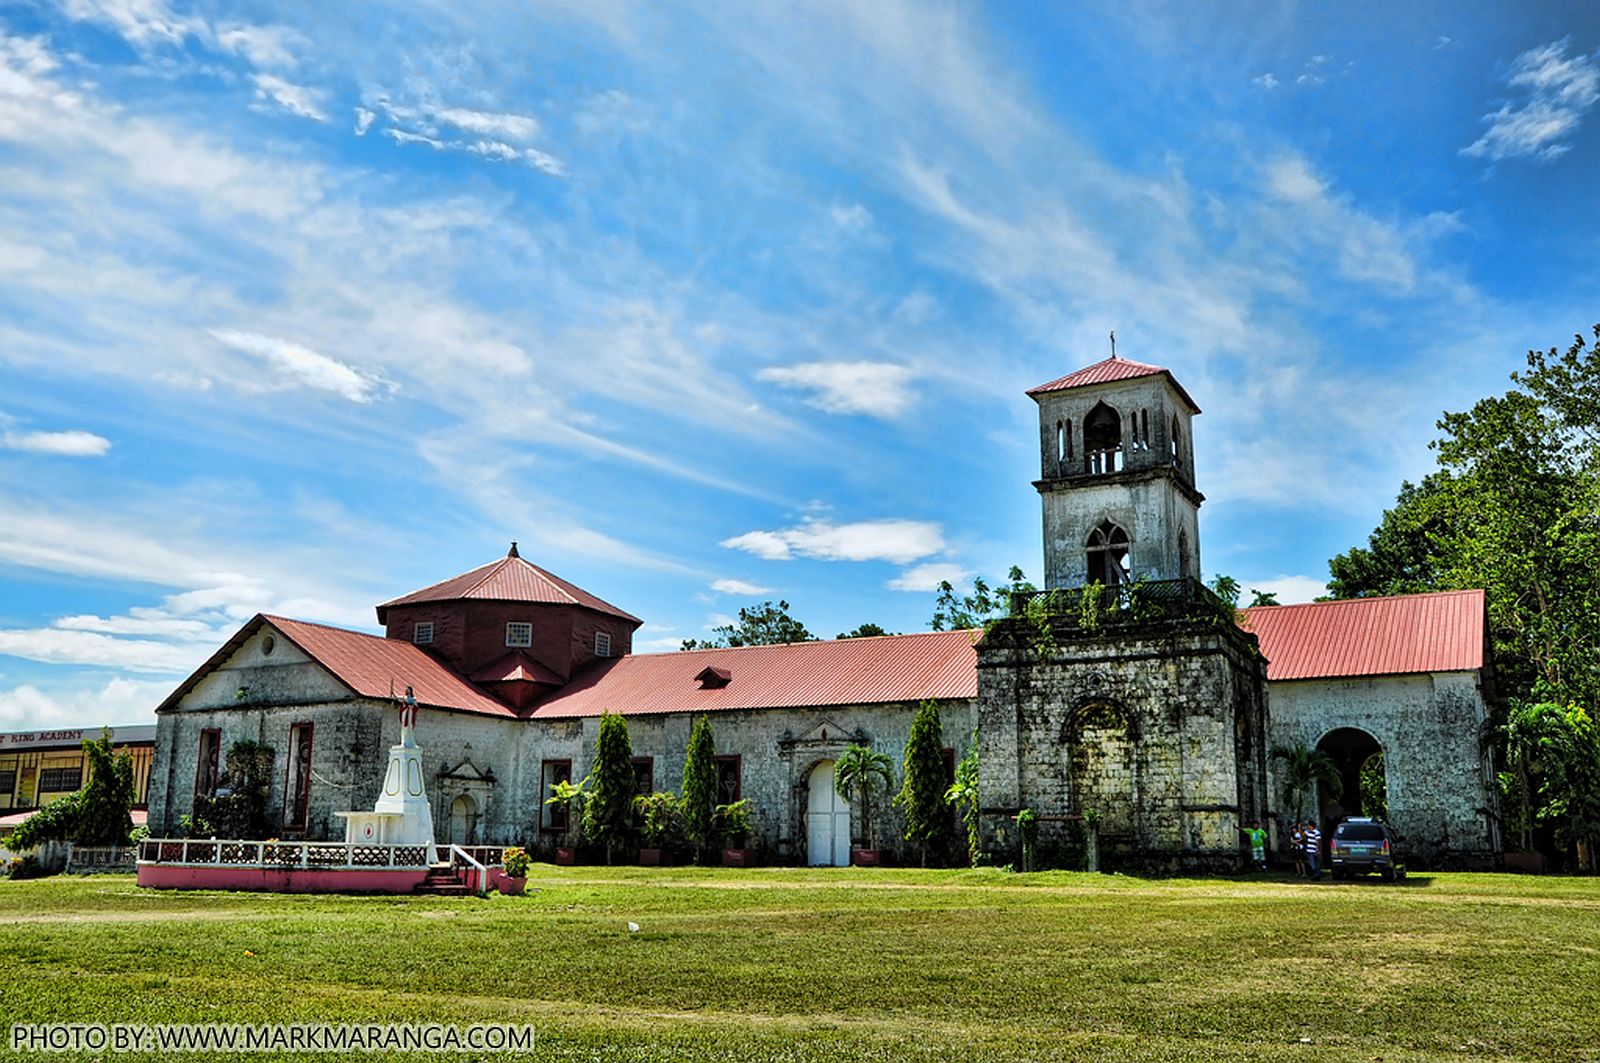 PHILIPPINEN REISEN - ORTE - BOHOL - Touristische Ortsbeschreibung für Cortes